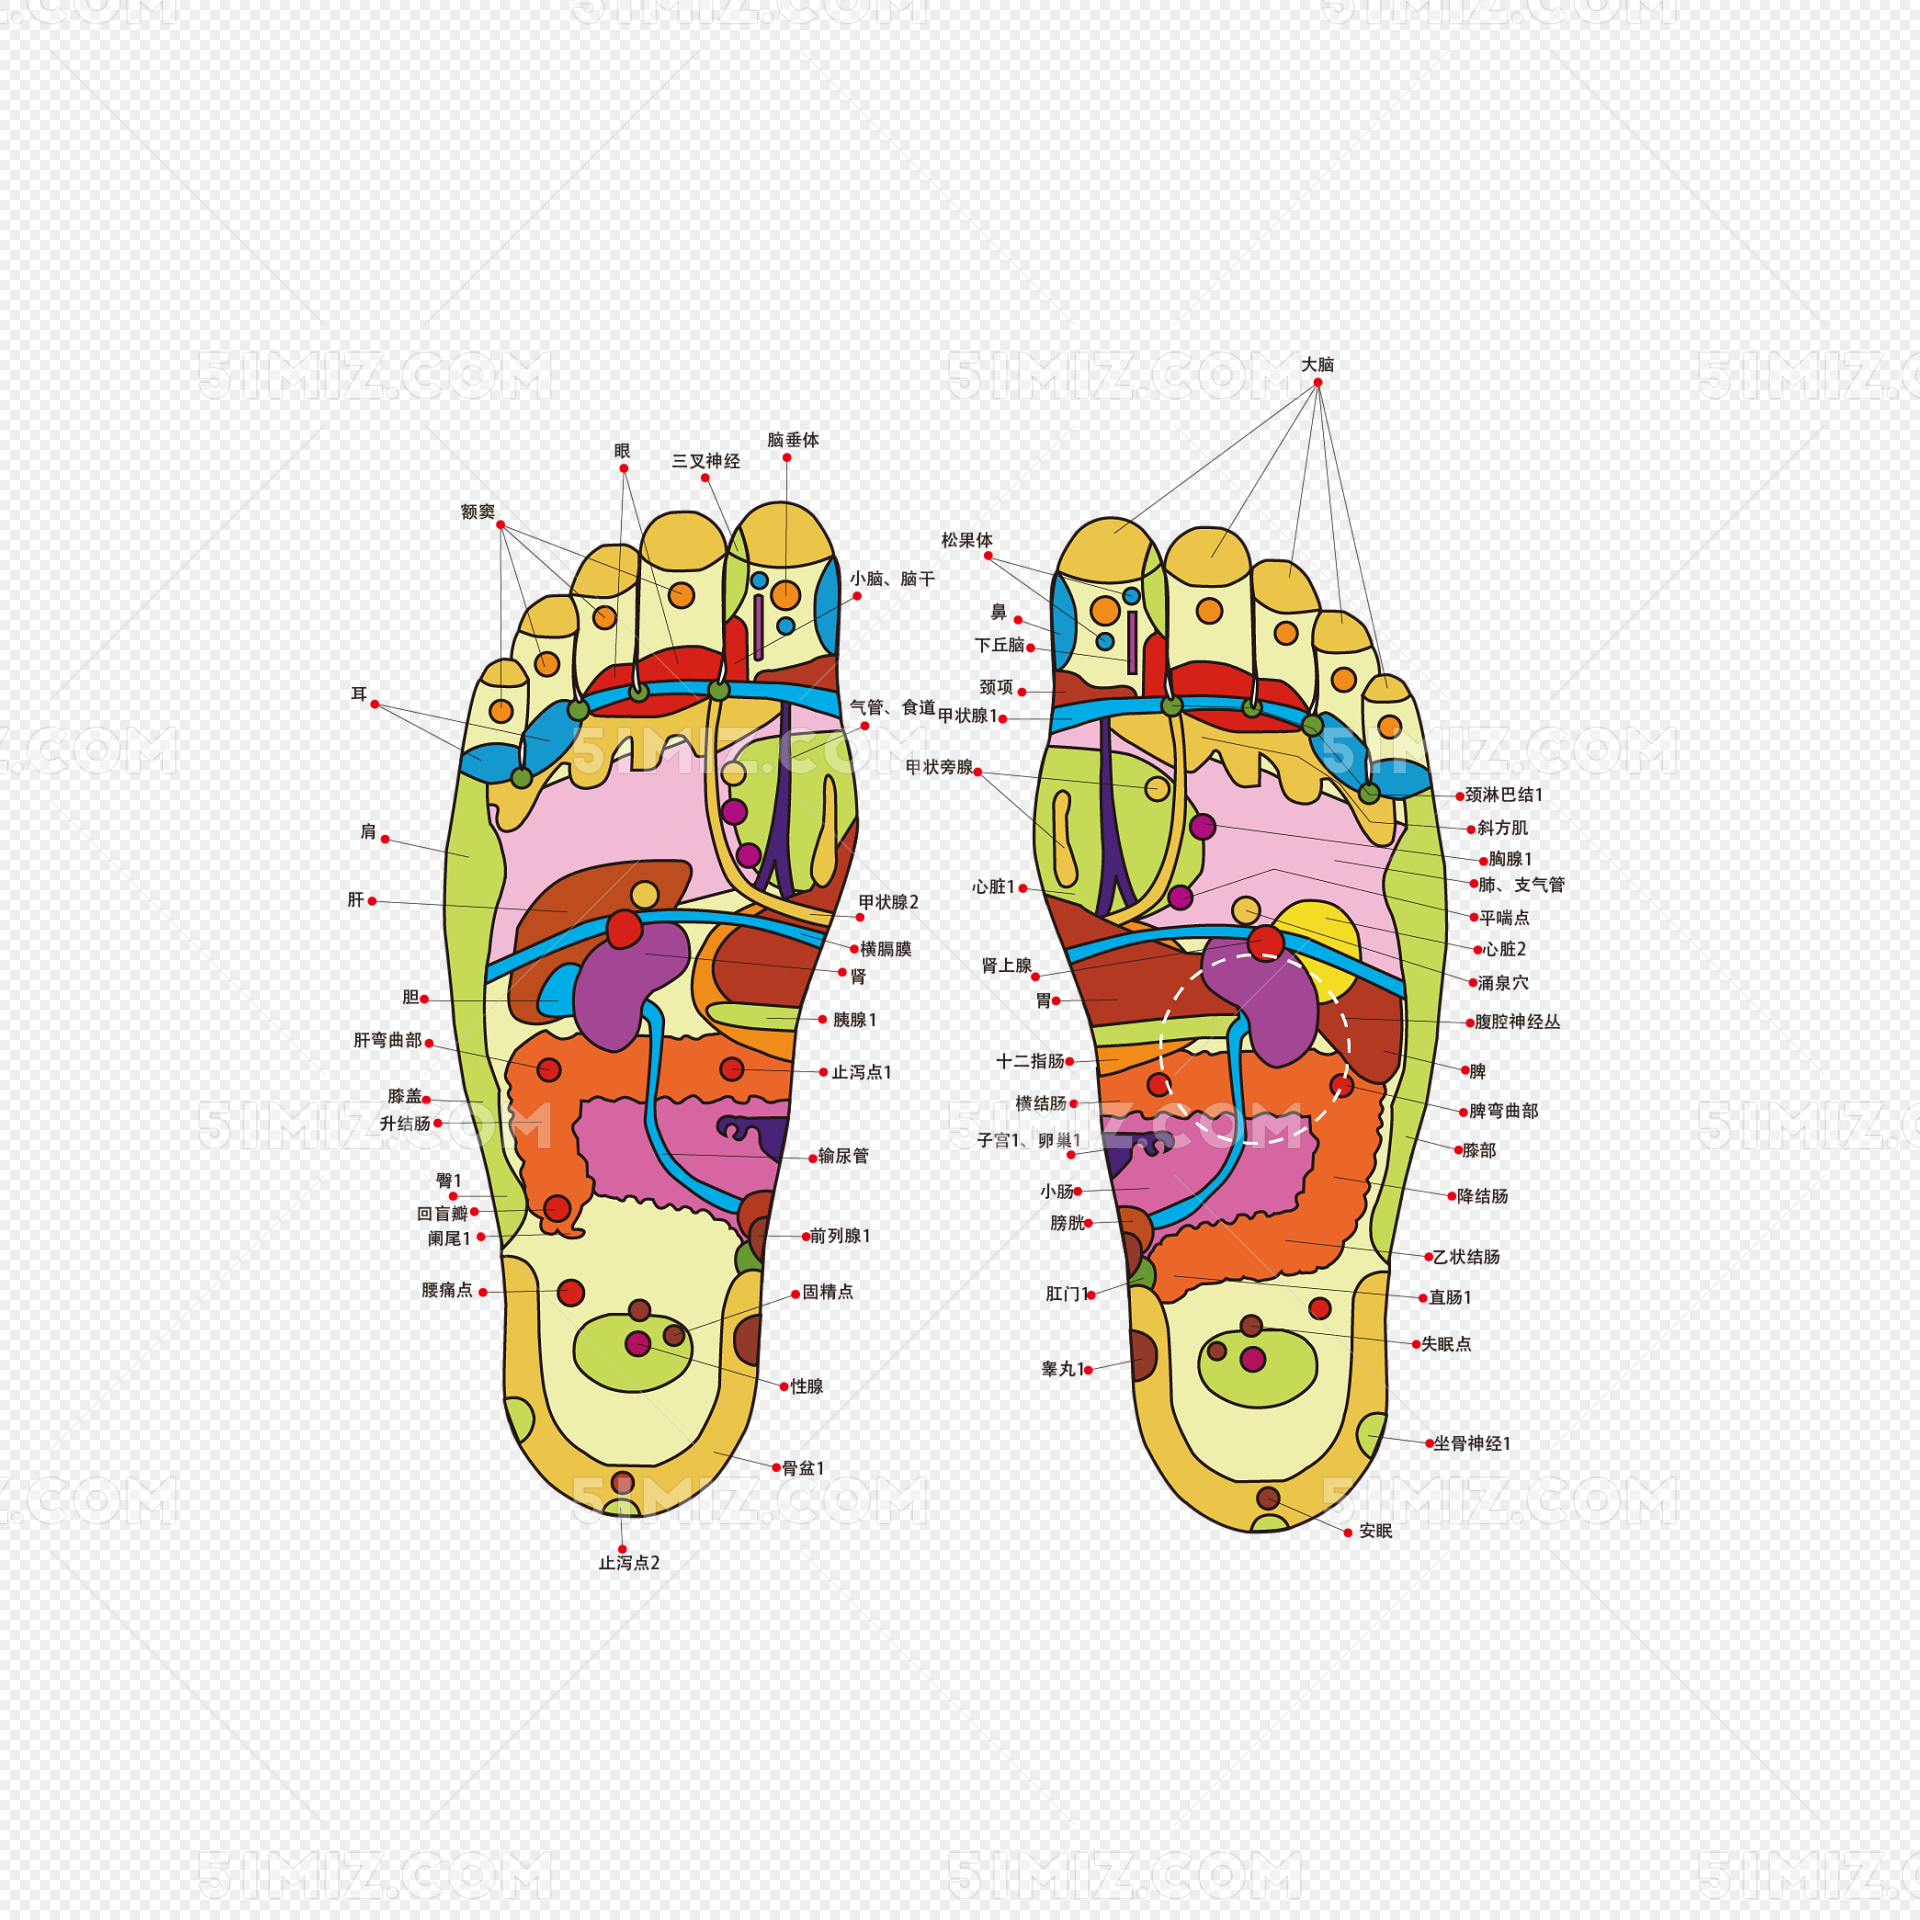 从医学理论来讲,脚上有人体各脏腑器官的反射区和穴位以及经络